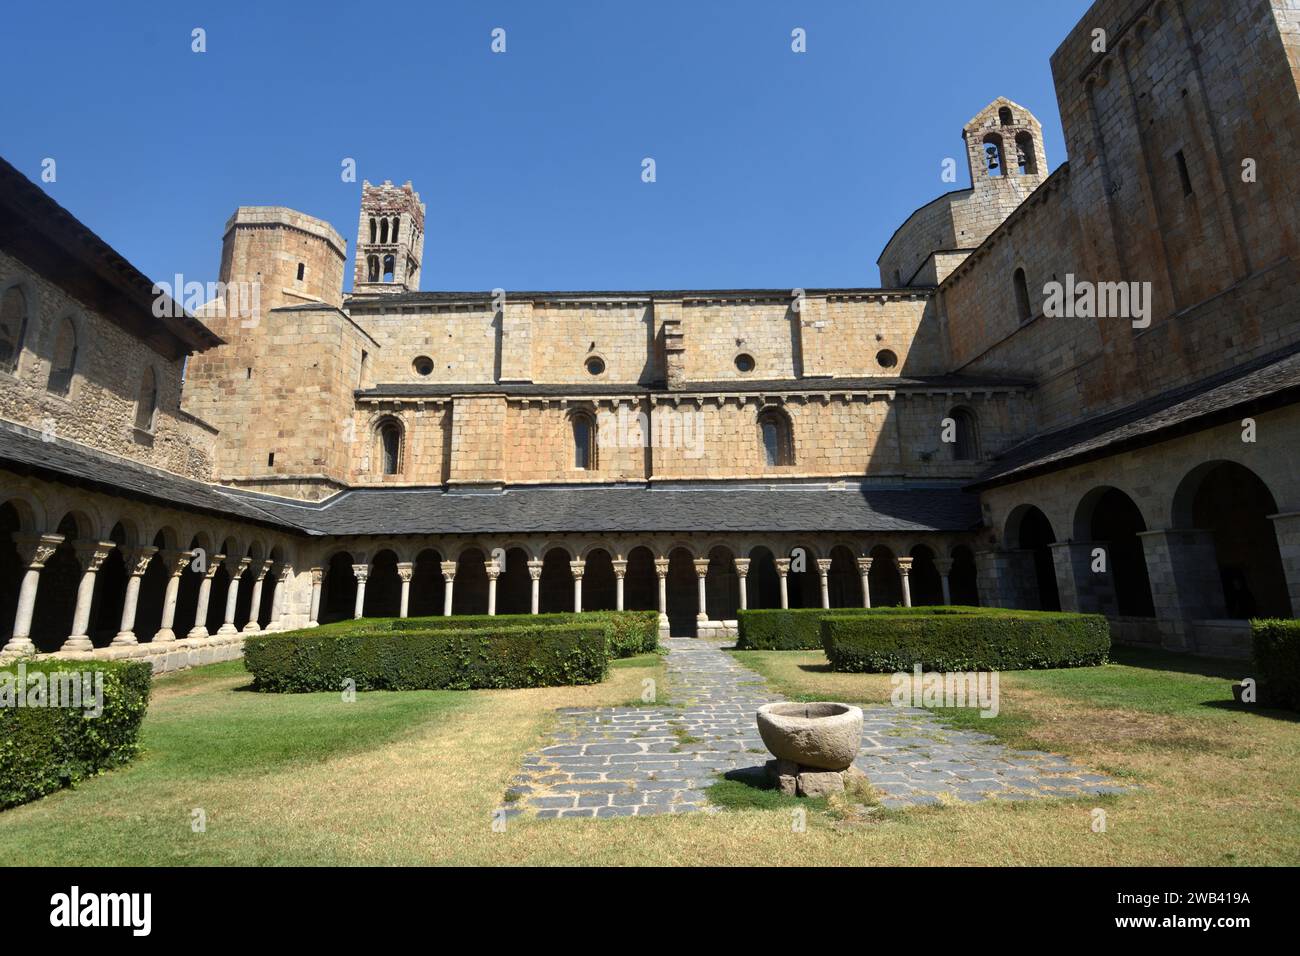 Cloître de la cathédrale Santa Maria d’Urgelll, la Seu d’Urgell, province de Lleida, Catalogne, Espagne Banque D'Images